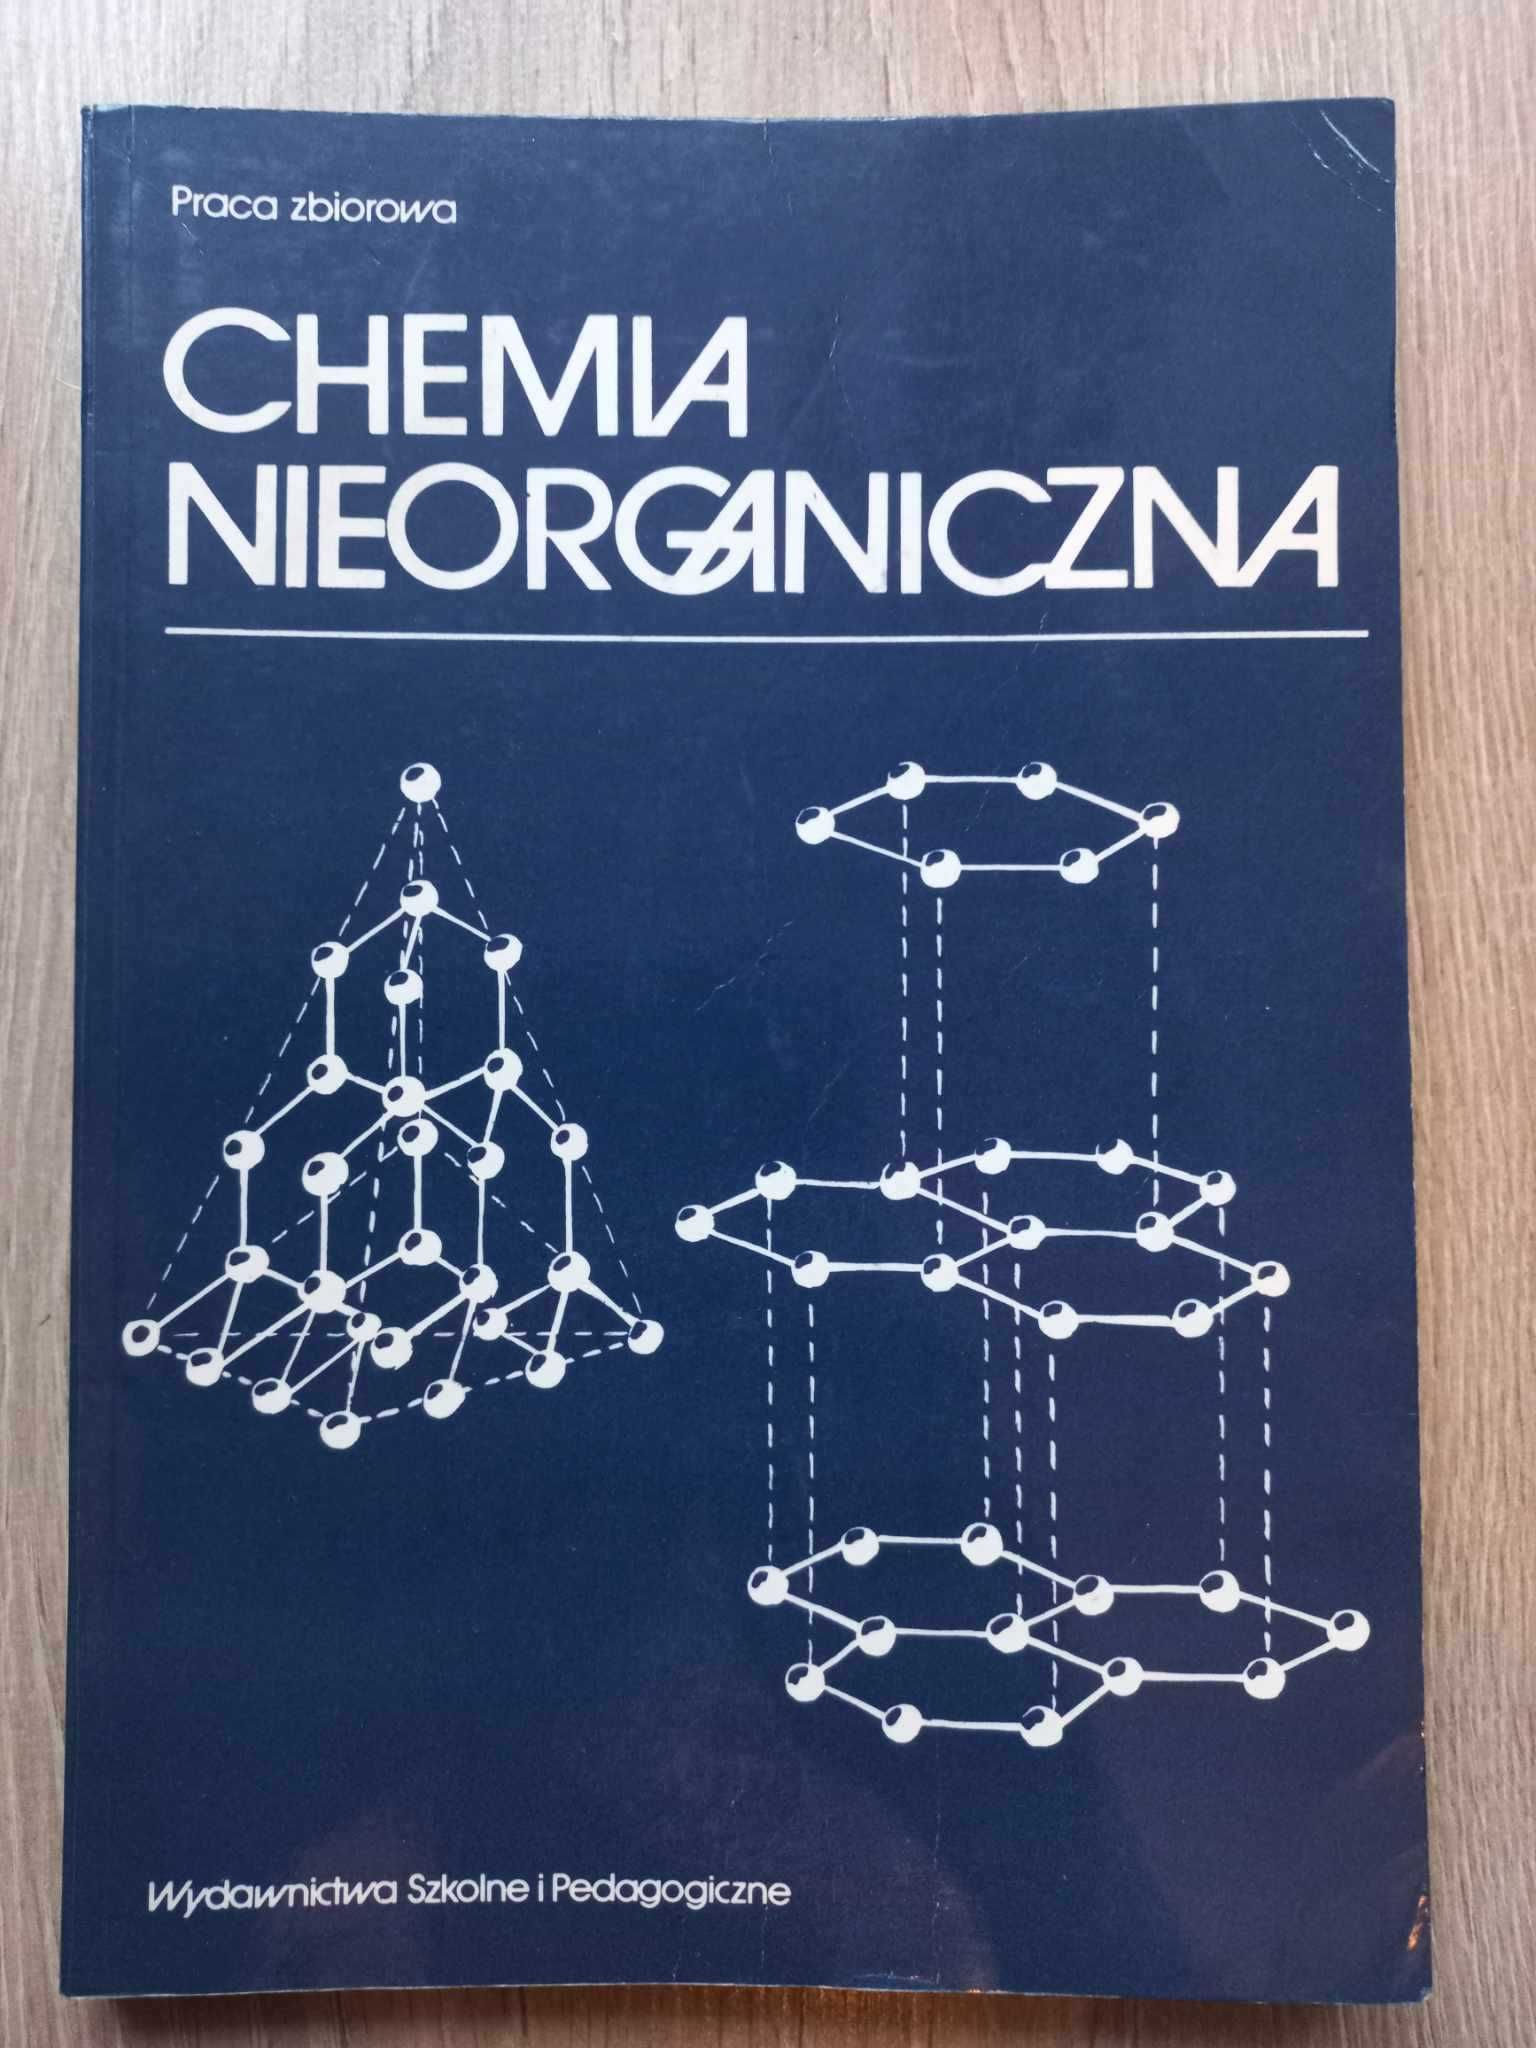 Chemia nieorganiczna praca zbiorowa Krzysztof Pazdro